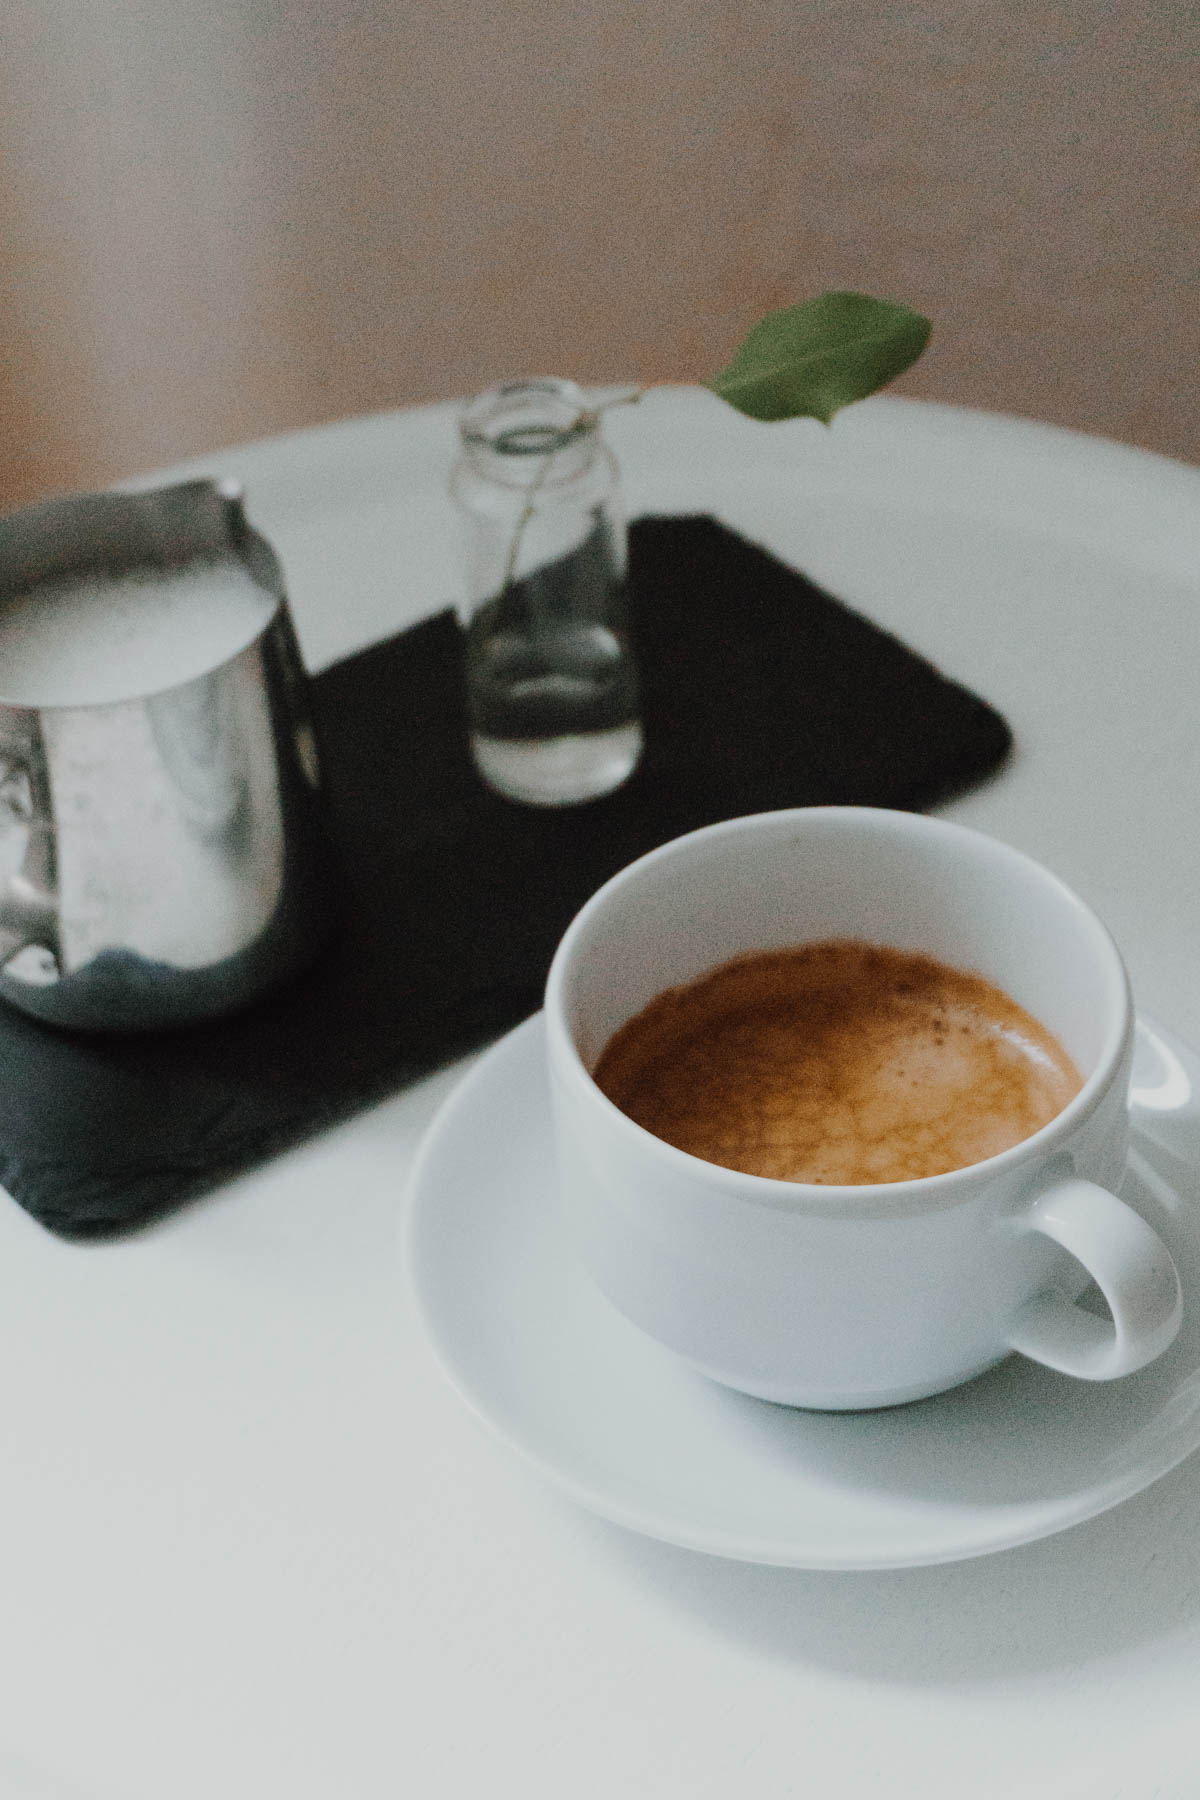 Coffee - Espresso - Cappuccino / Home Cafe, RG Daily Blog